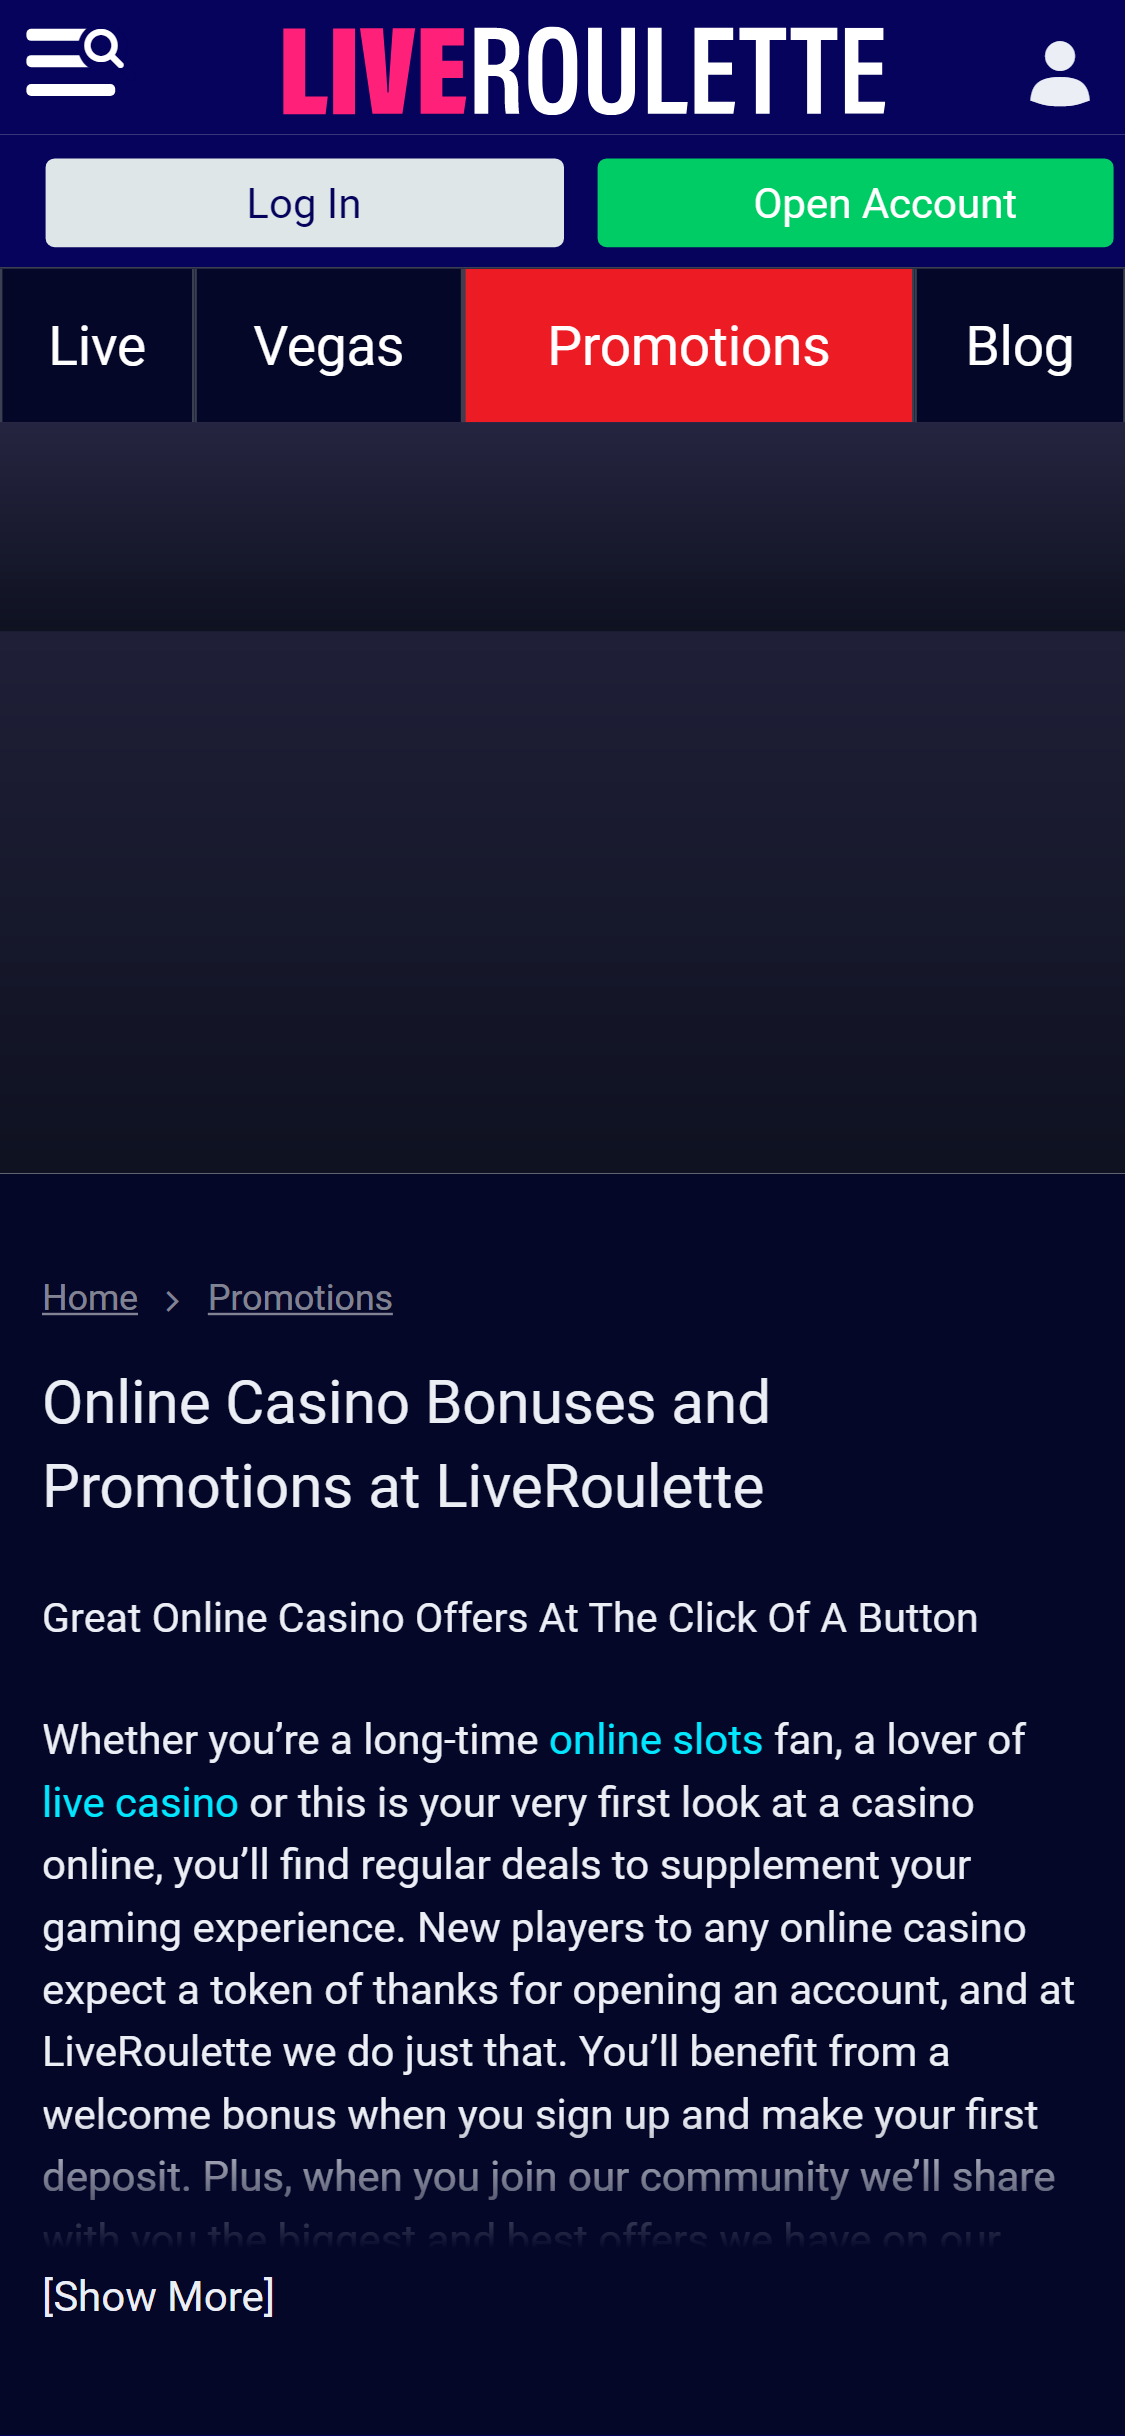 Live Roulette Casino Mobile No Deposit Bonus Review